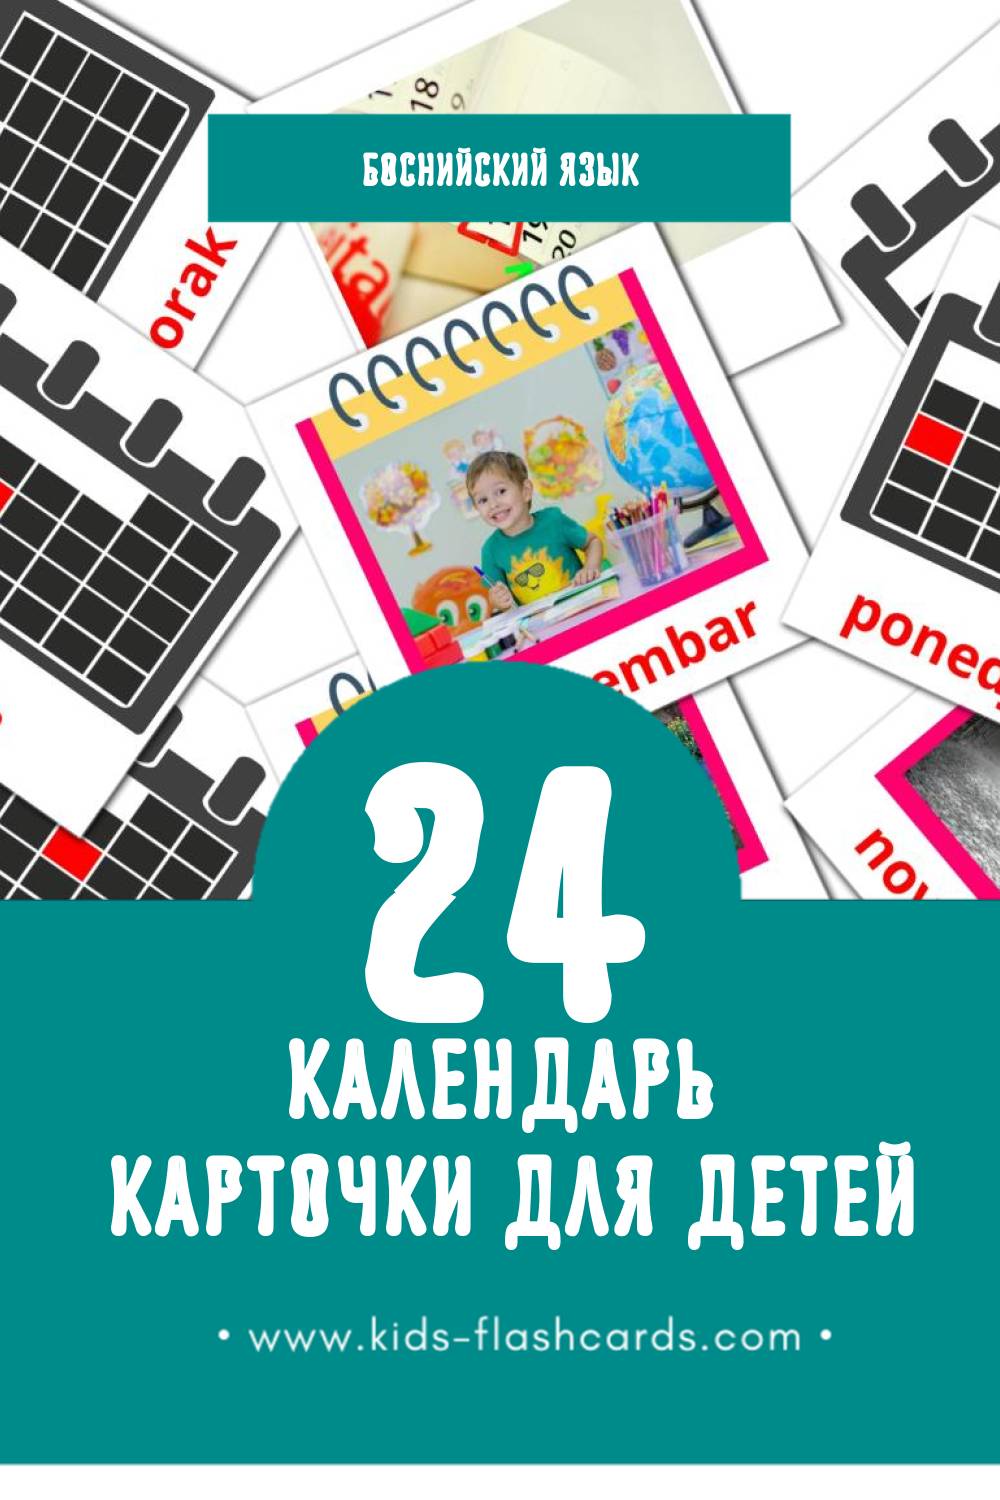 "Kalendar" - Визуальный Боснийском Словарь для Малышей (24 картинок)